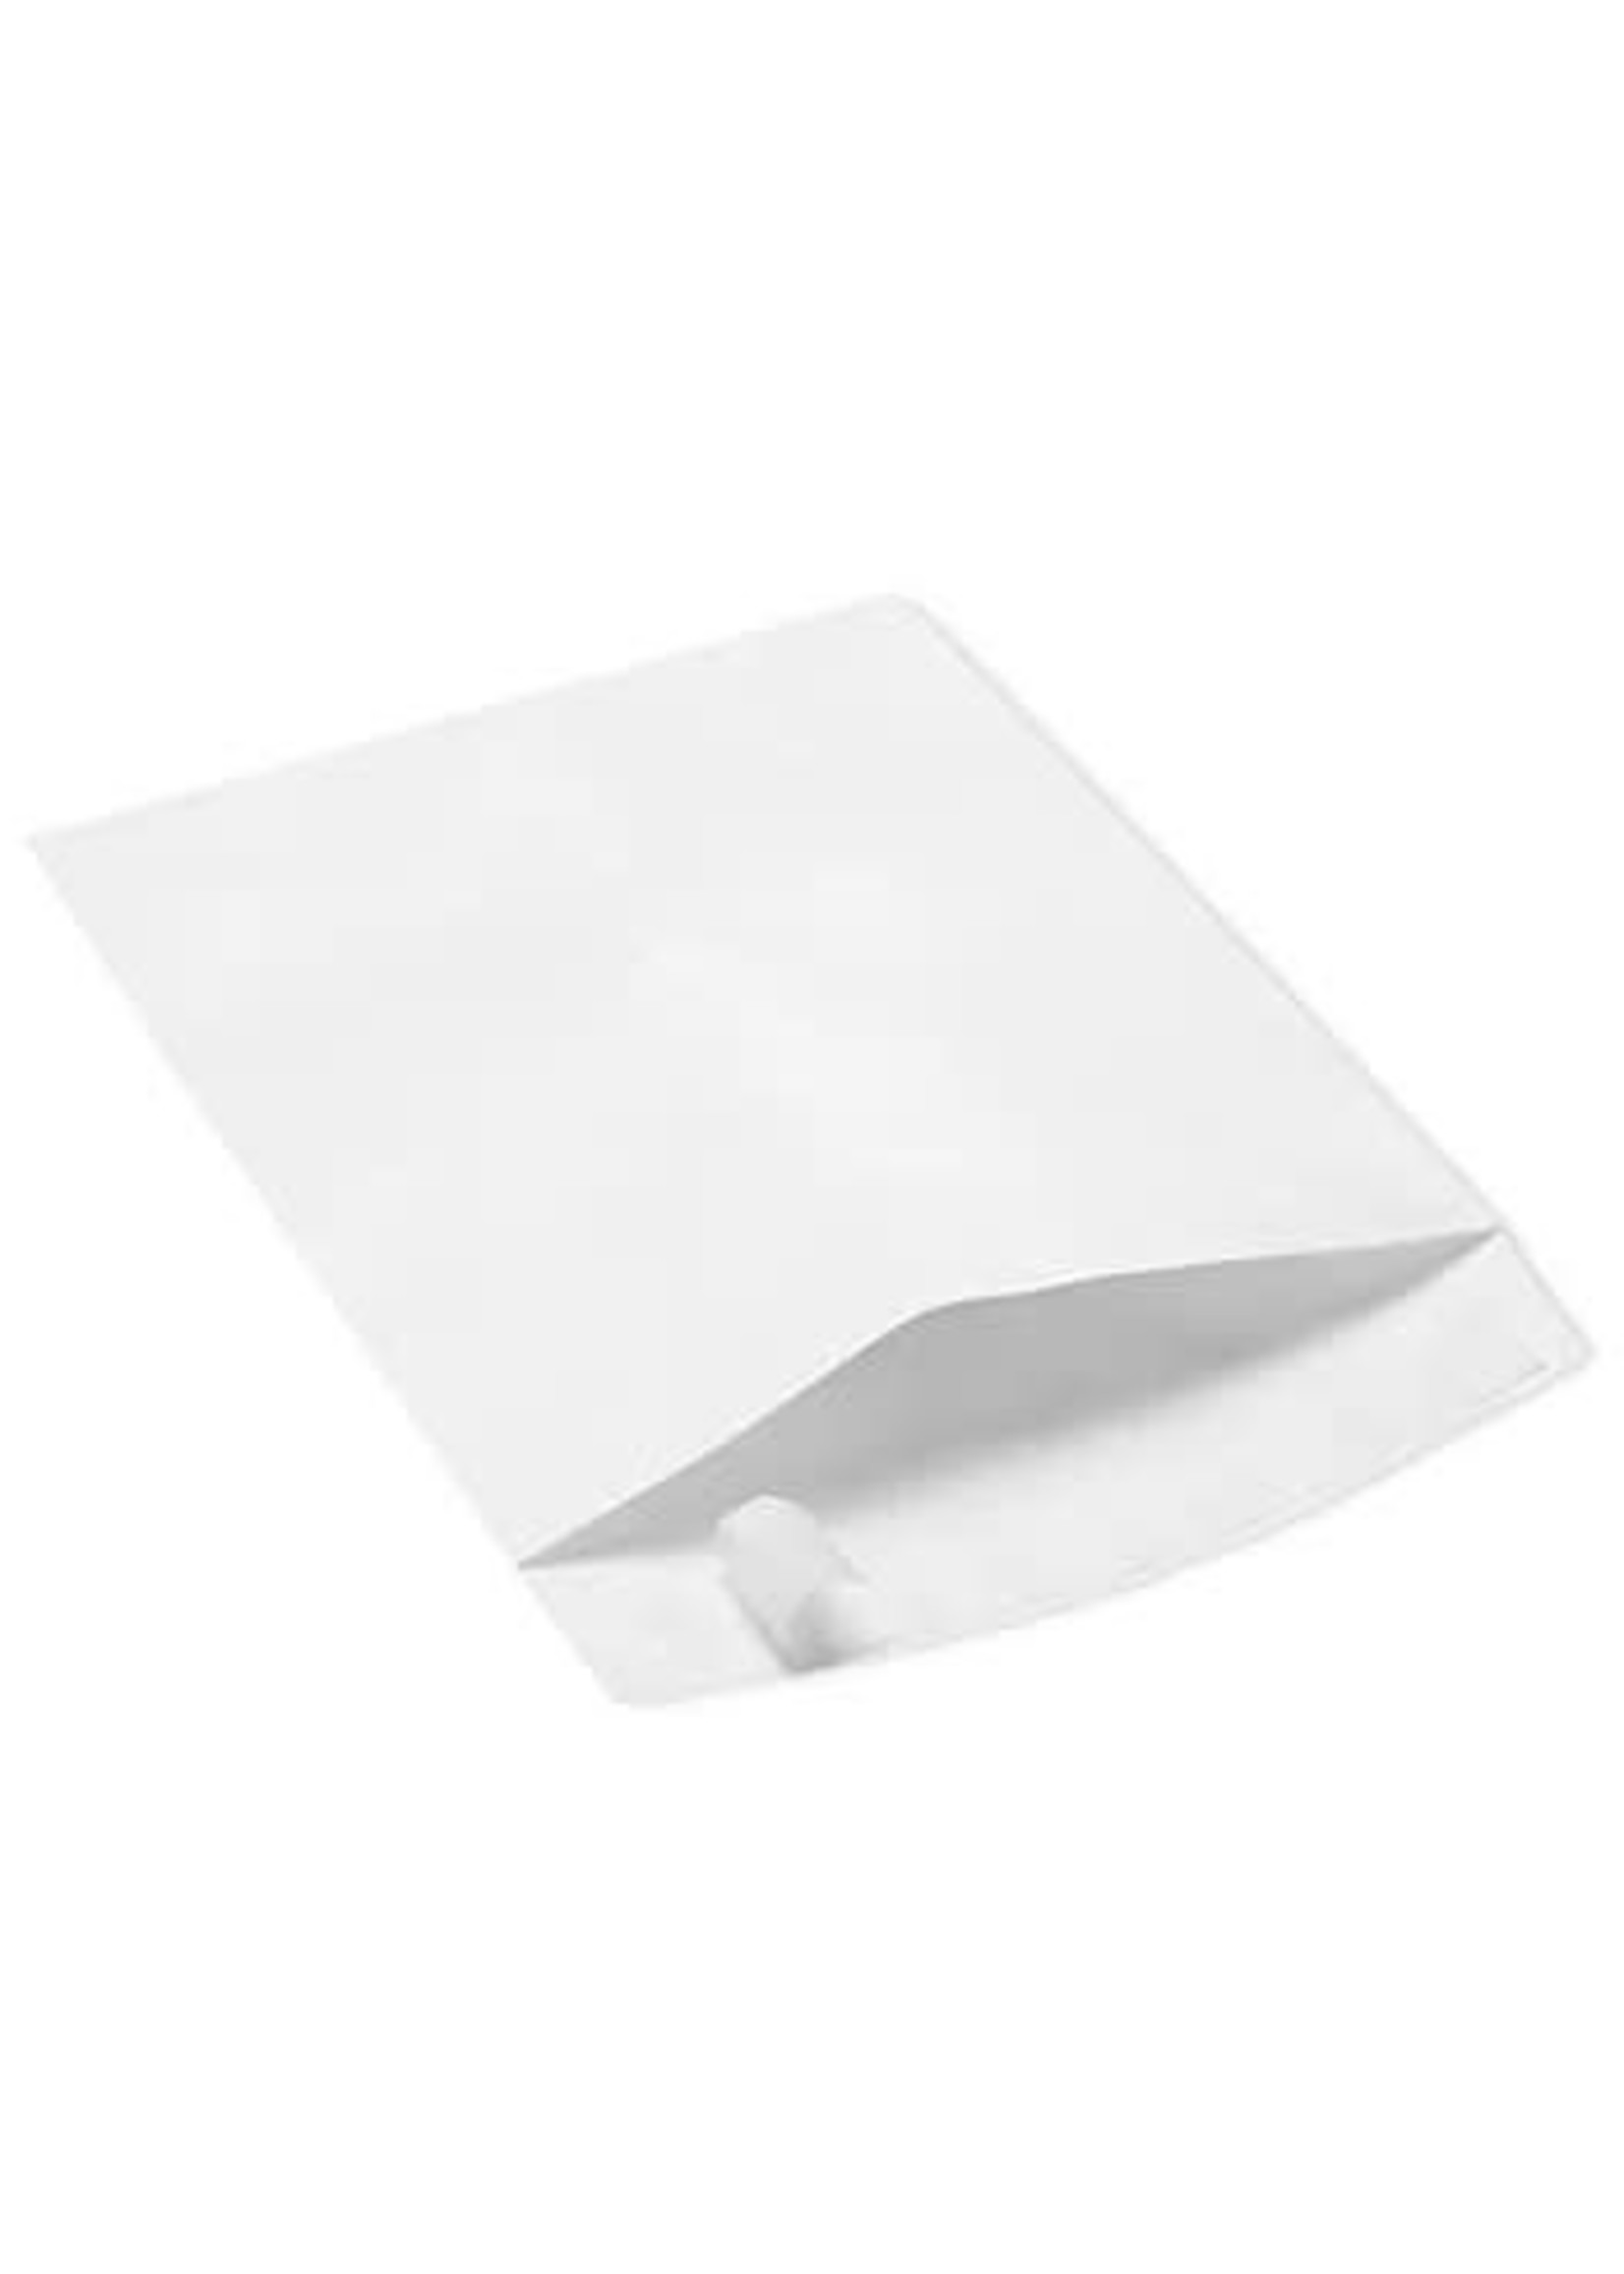 White Tyvek Envelope